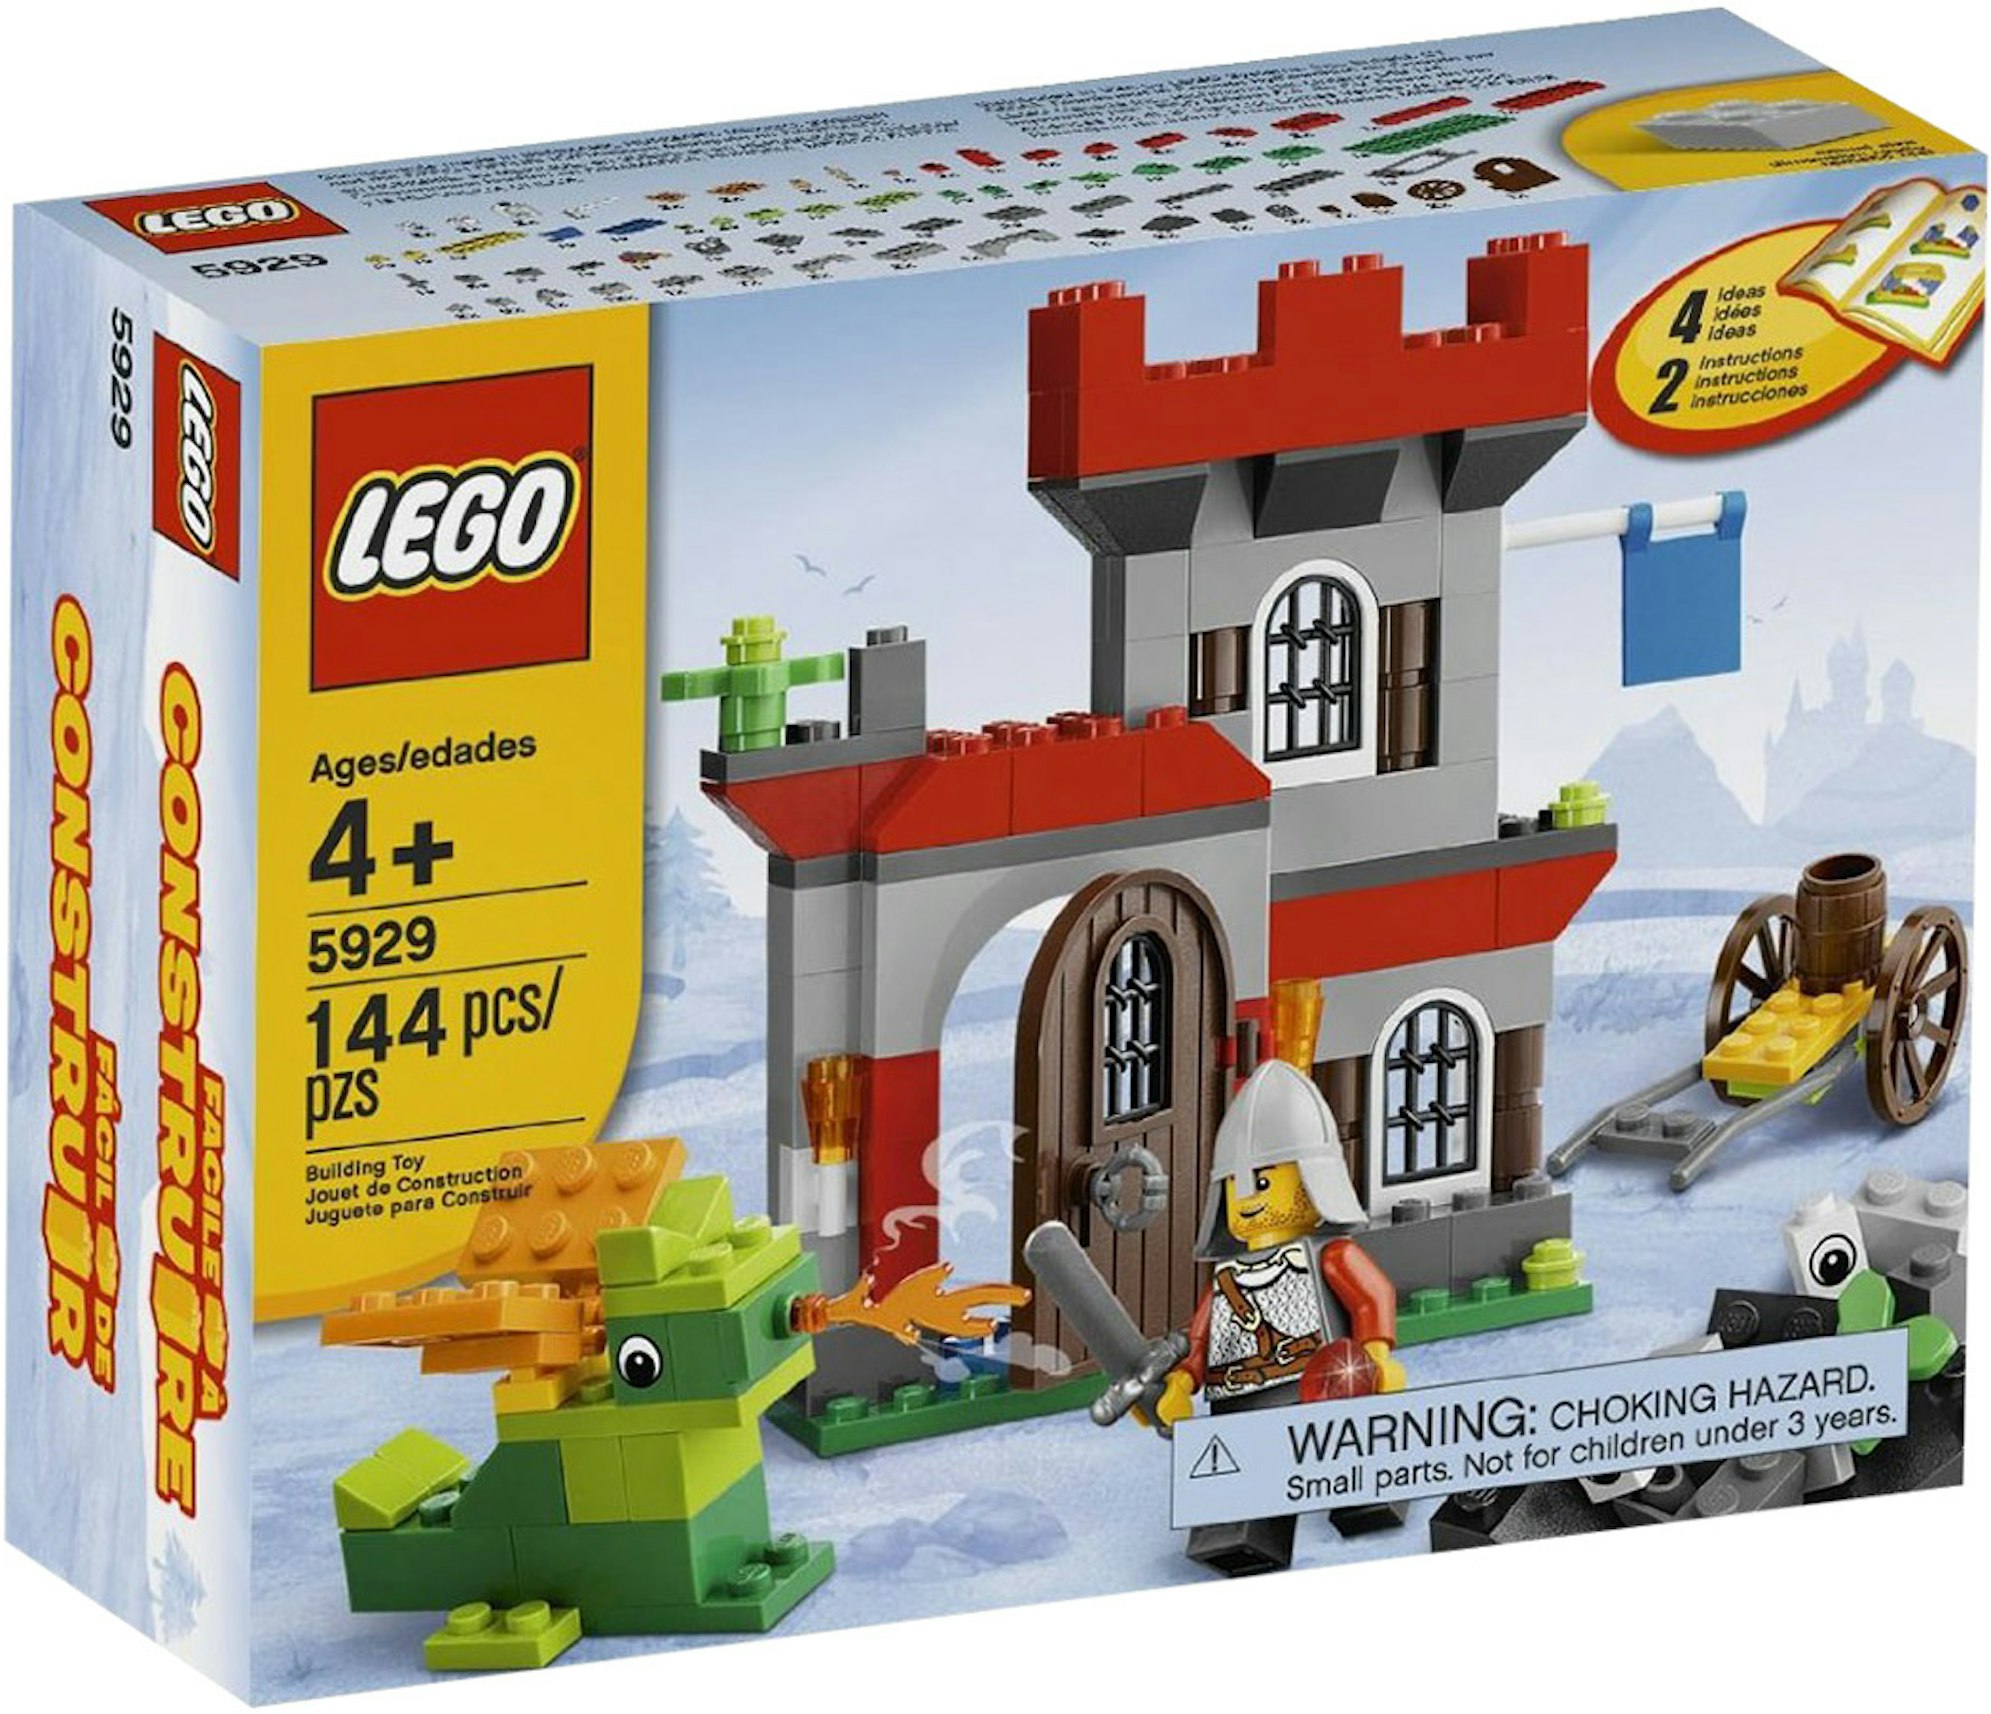 LEGO Knight & Castle Set 5929 - JP